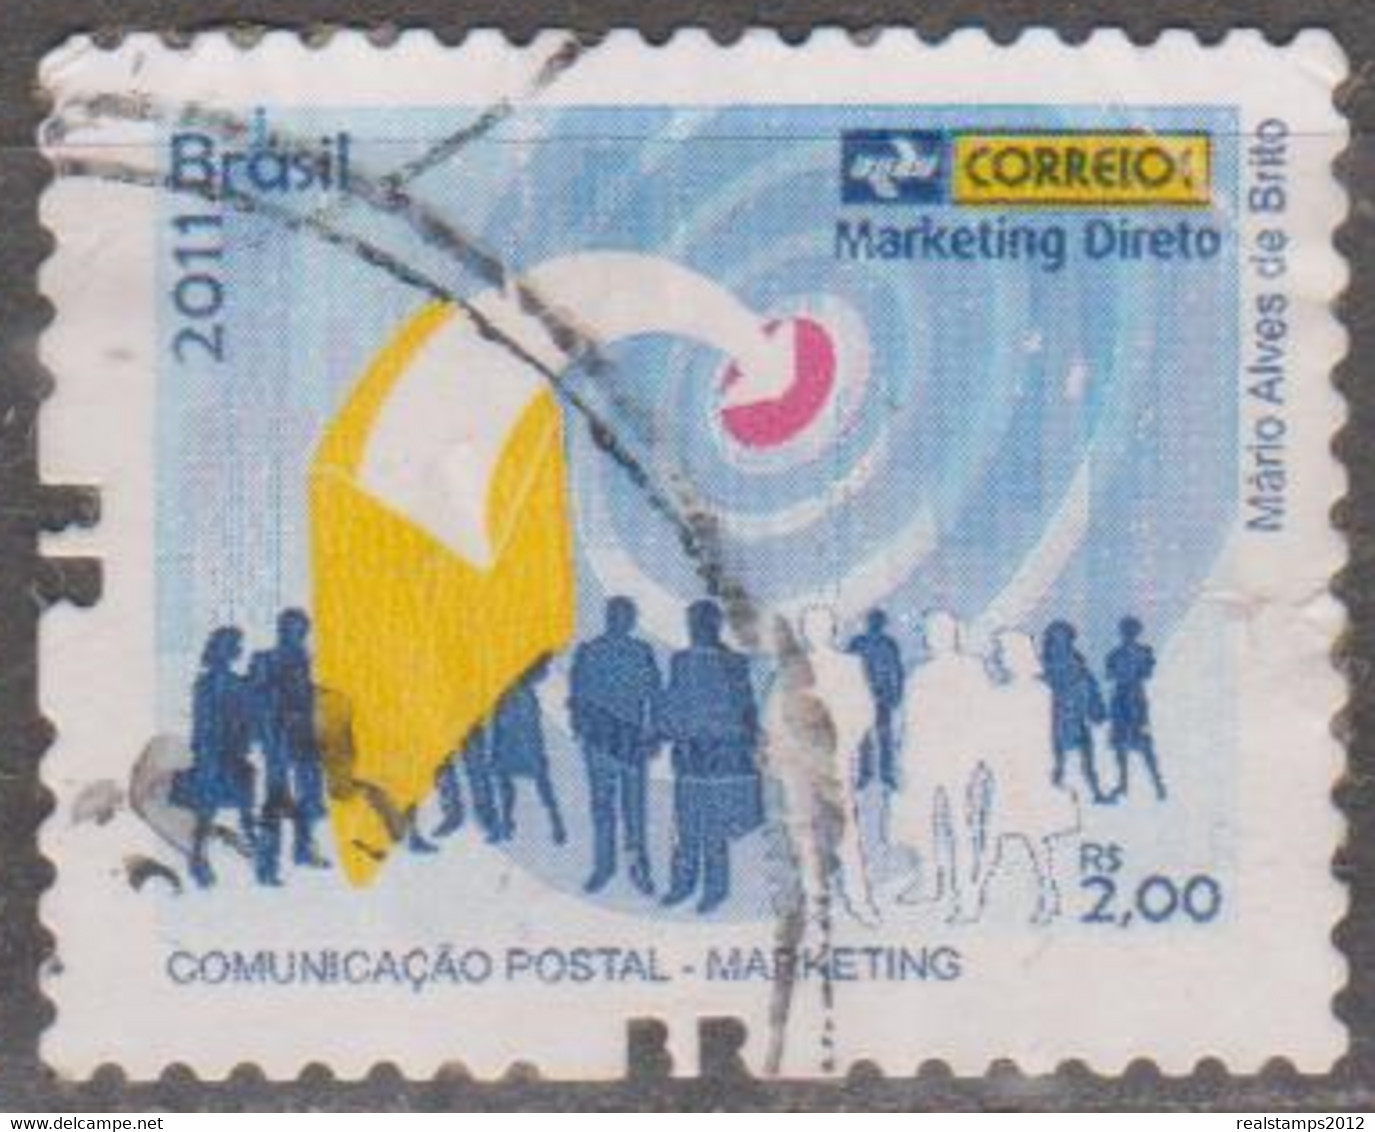 Brasil - 2011 - Comunicação Postal - Marketing   - Marketing Direto  R$ 2,00 (o)  RHM Nº - Usati